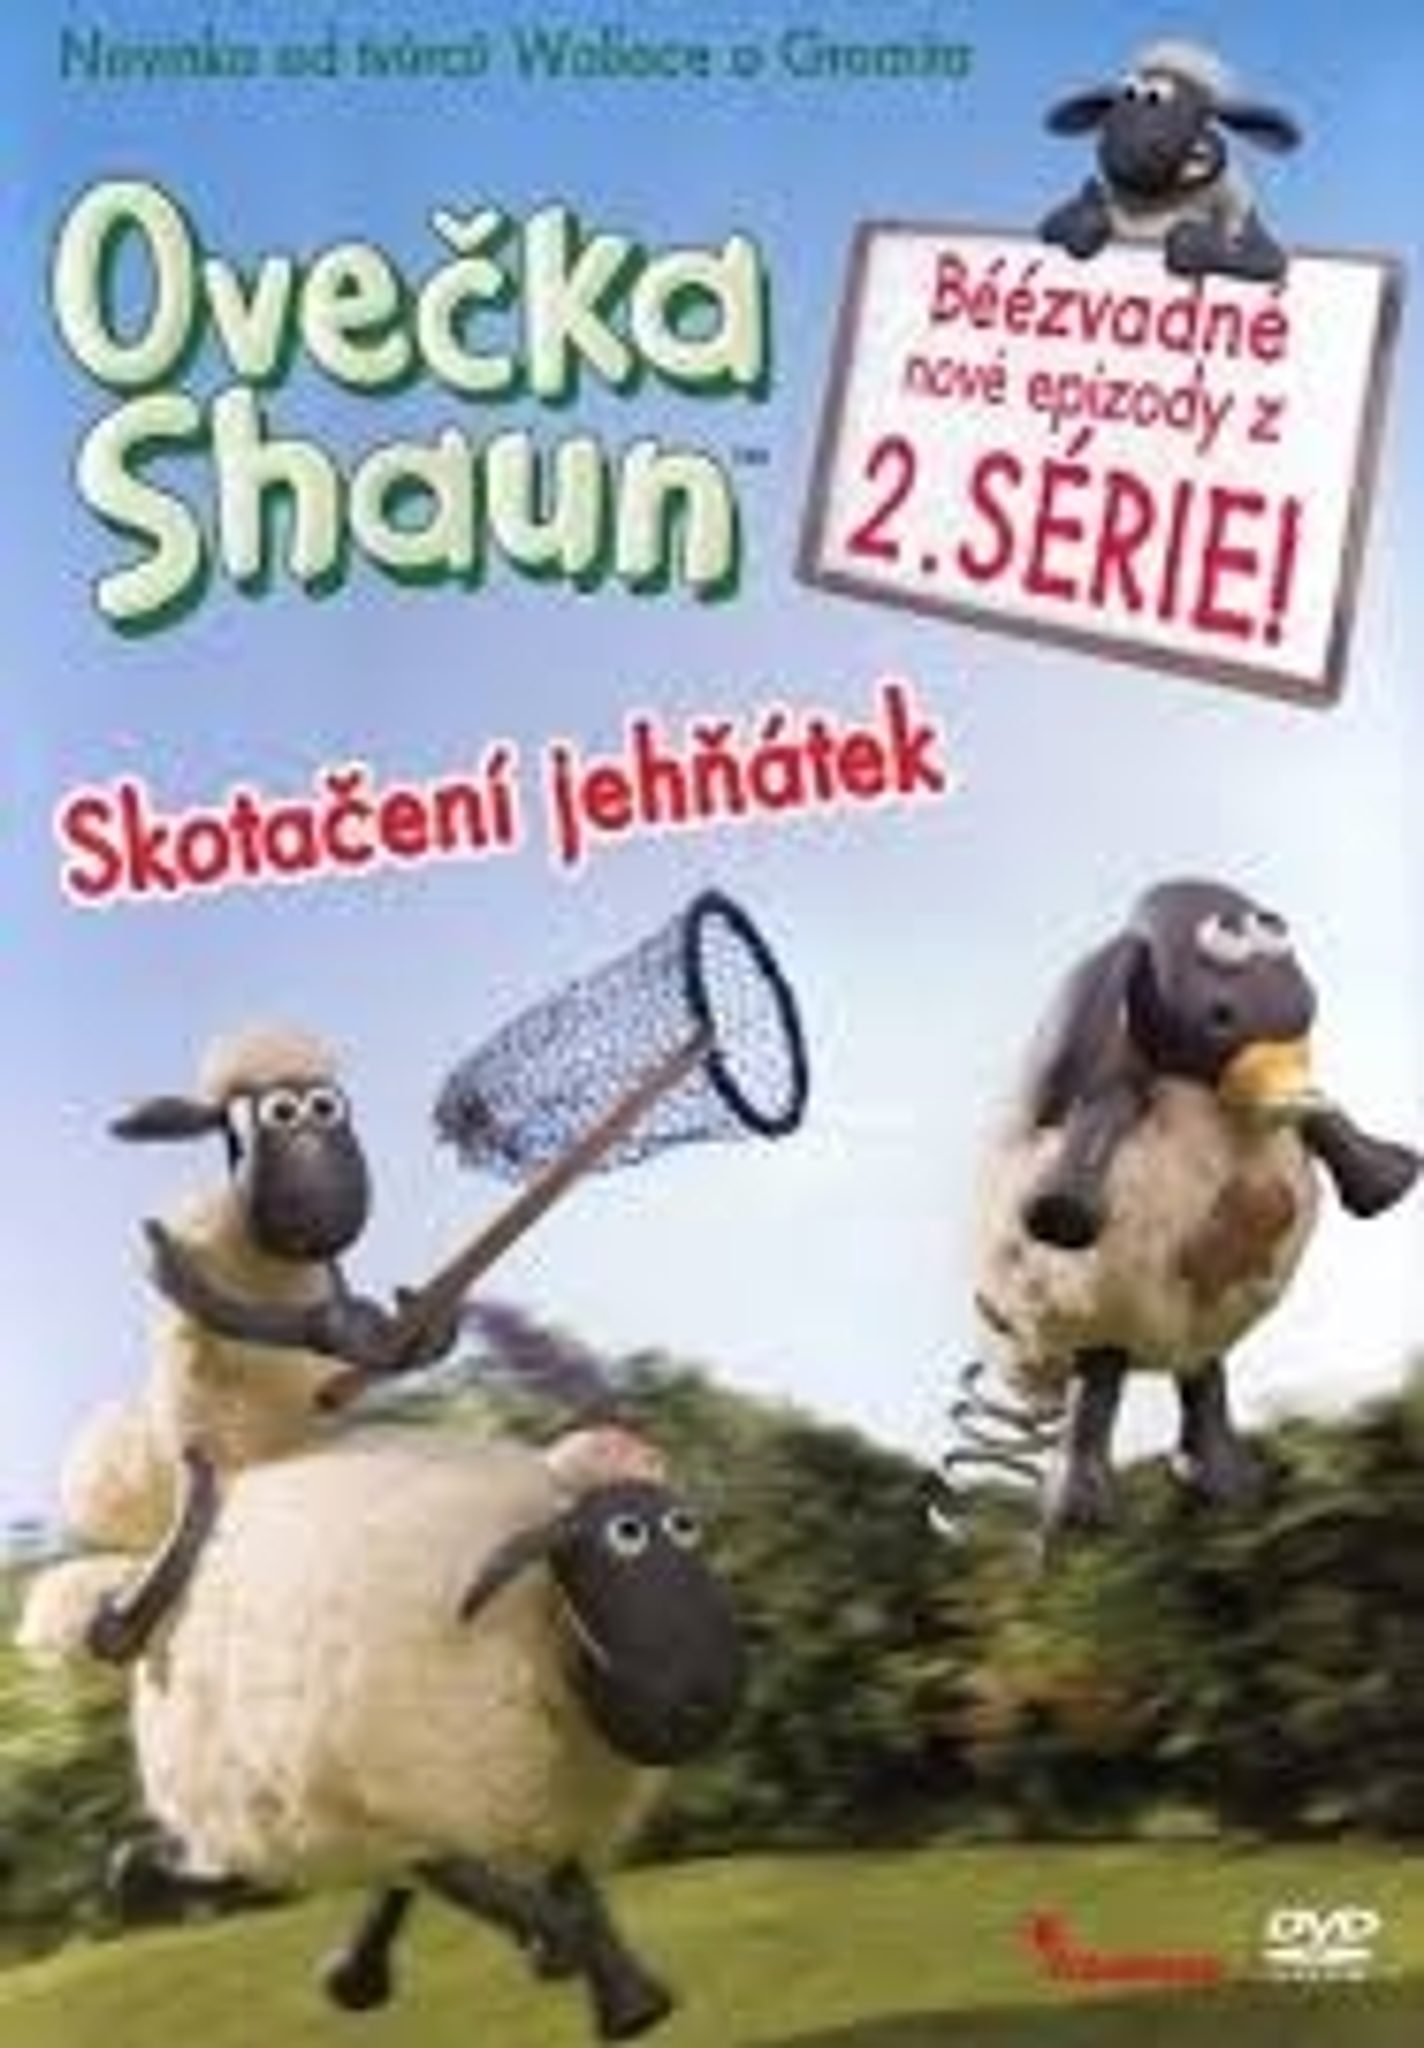 DVD Oveka Shaun - Skotaen jehtek 2.srie